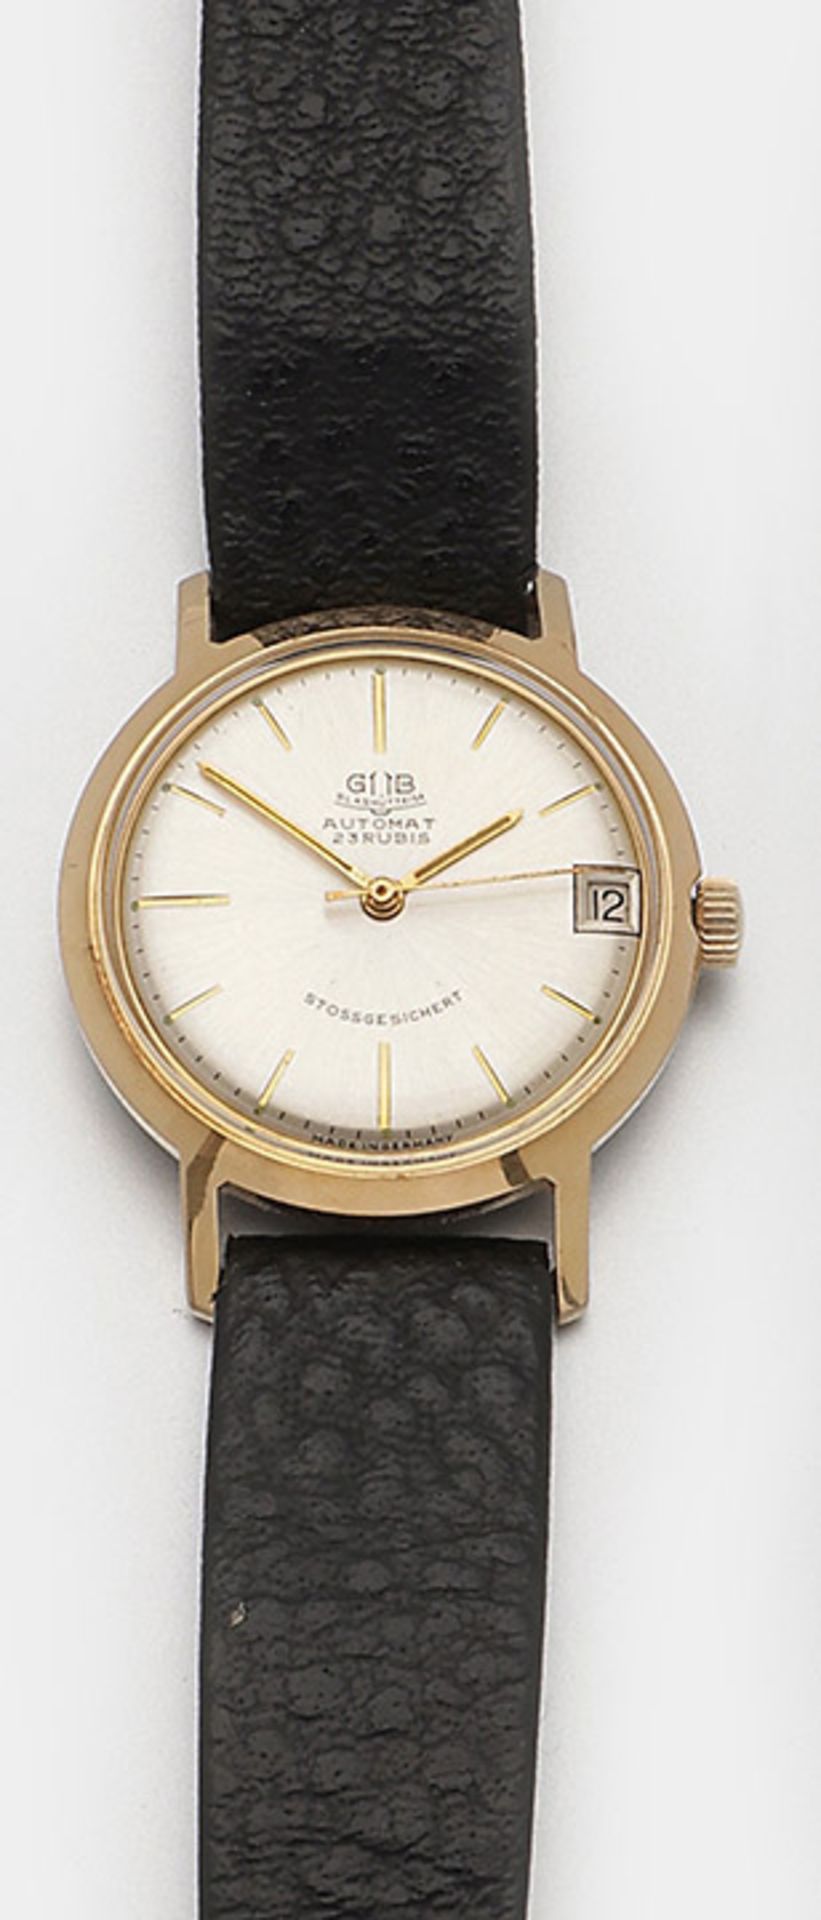 Herren-Armbanduhr von Glashütte-"GUB", aus den 60er Jahren